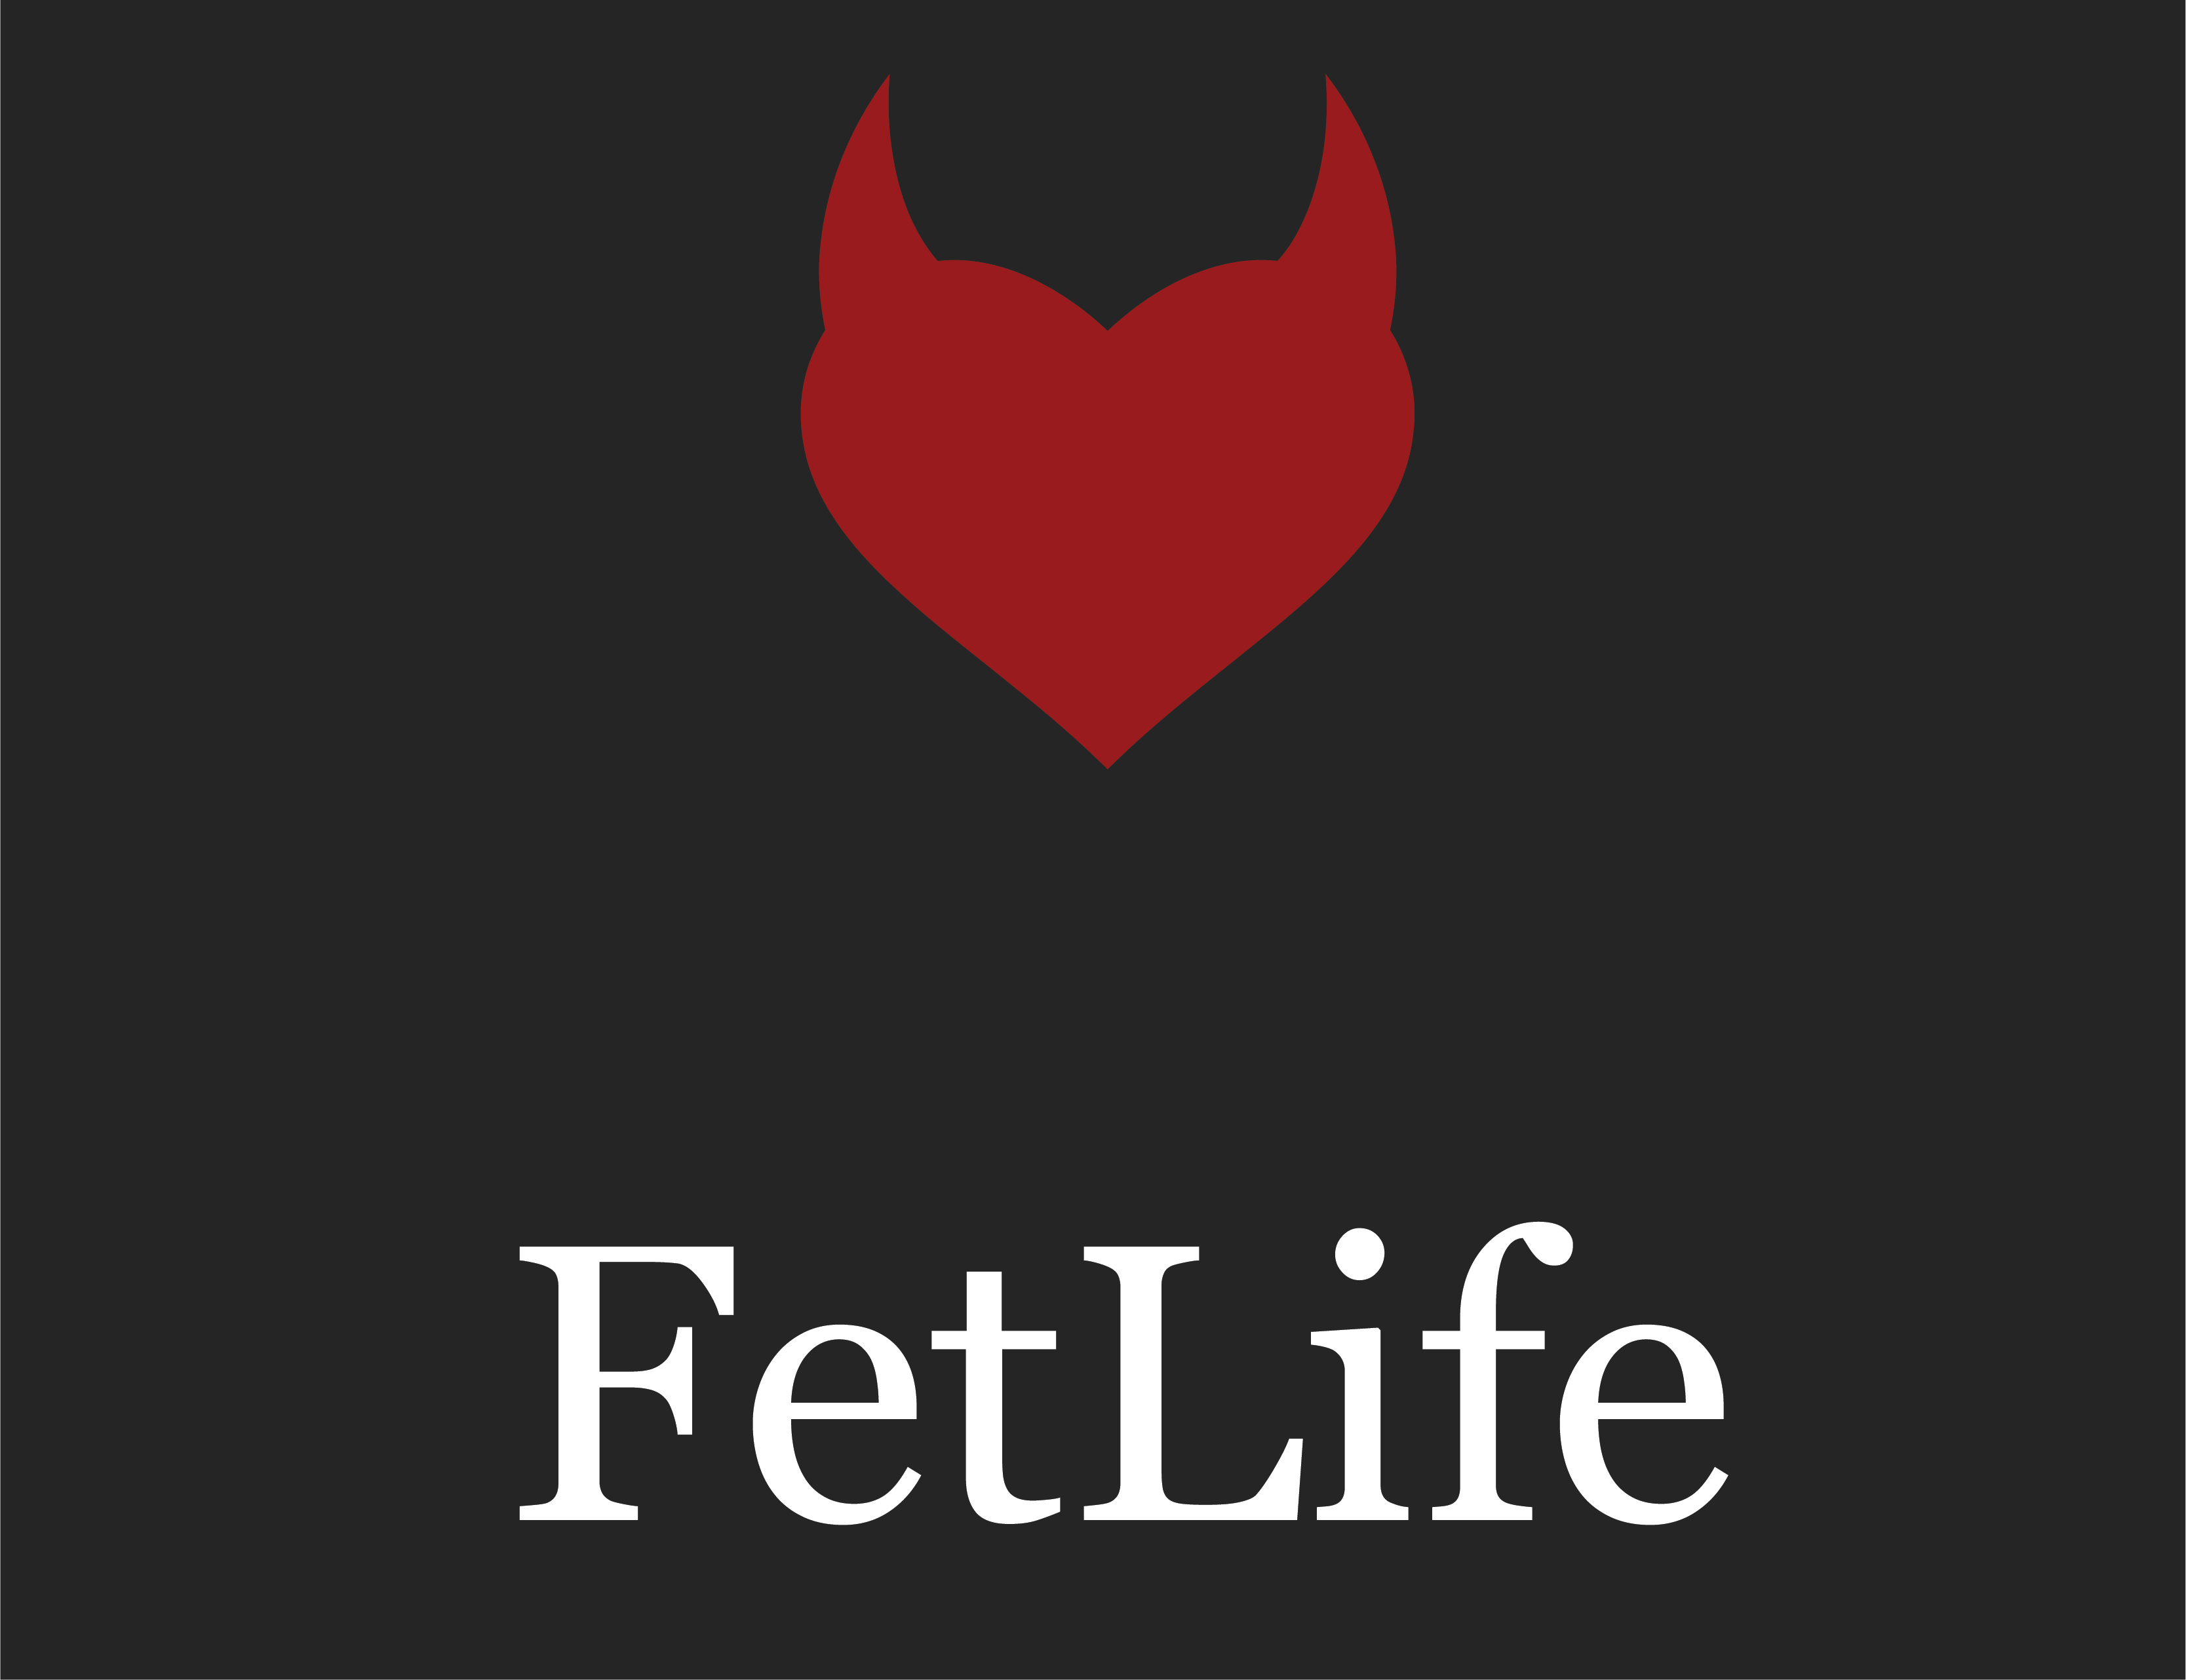 fetlife log in